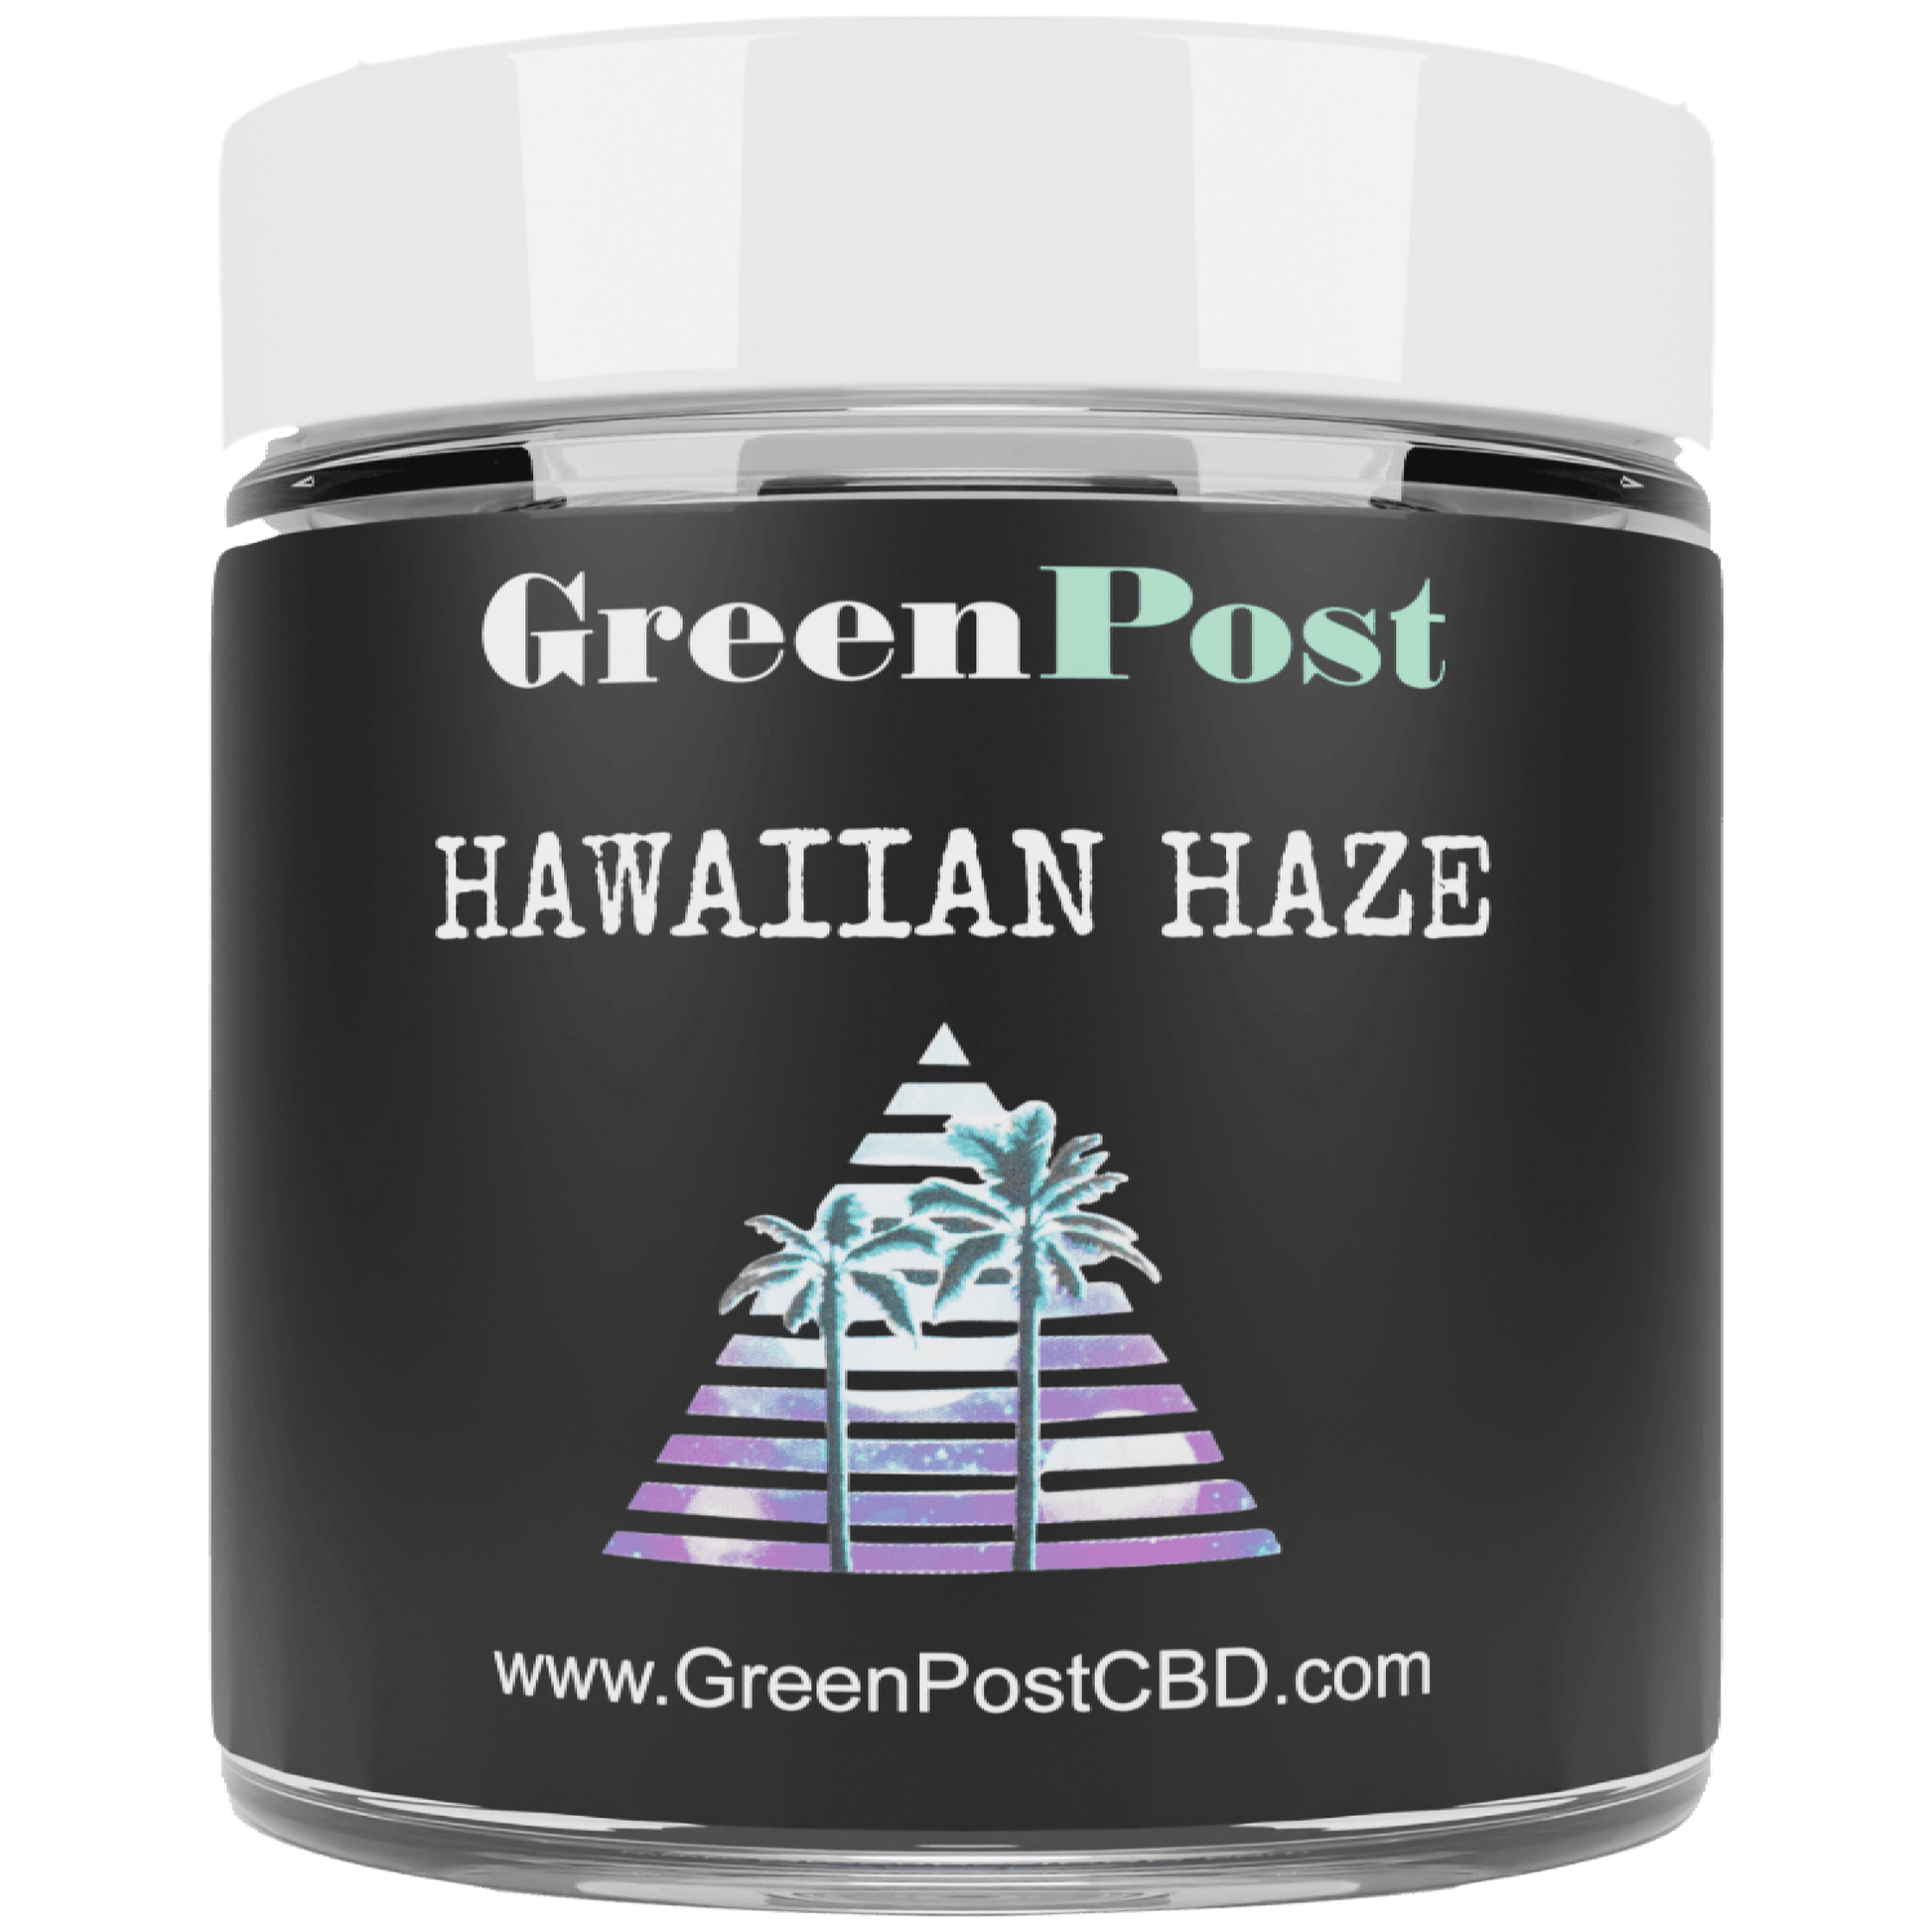 Hawaiian Haze (Sativa) - GreenPost CBD - www.GreenPostCBD.com